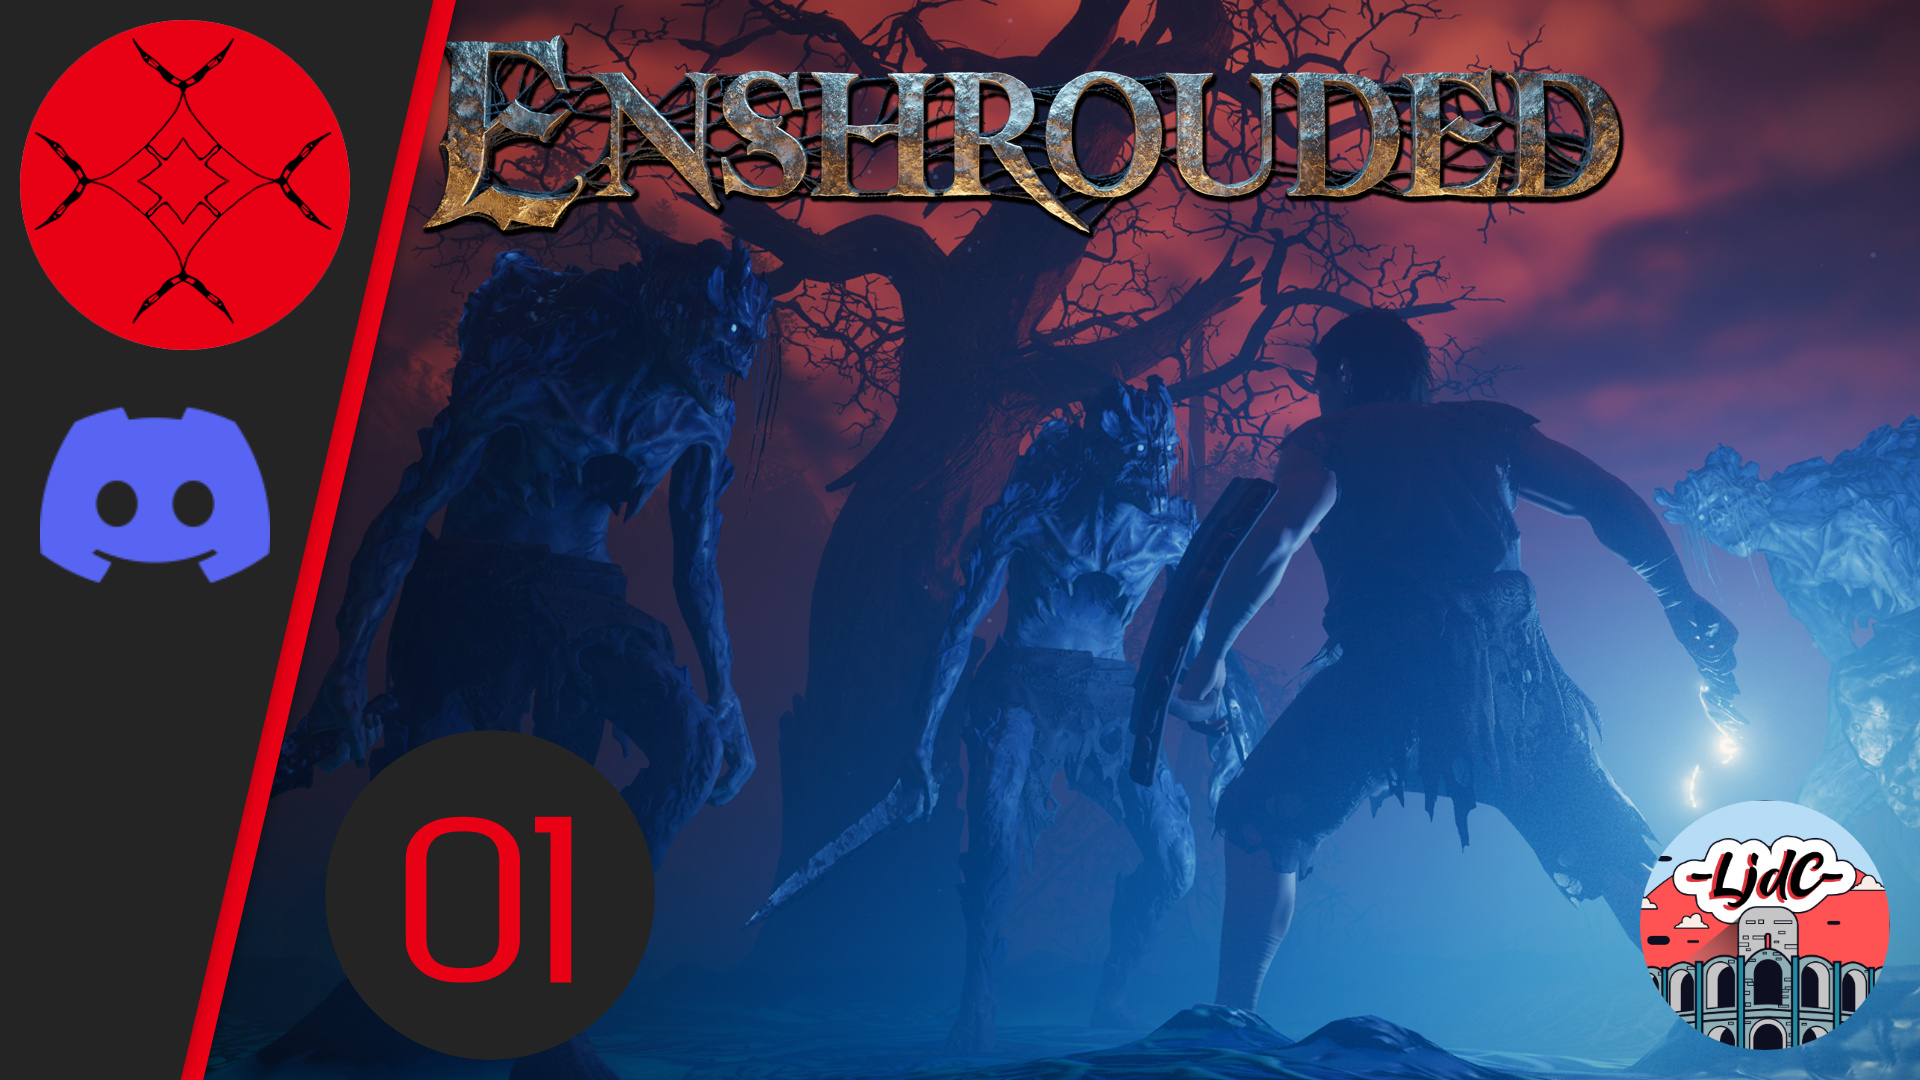 Vignette du let's play Enshrouded, Un personnage armée d'un bouclier et d'une épée se prépare à affronter 3 géants visiblement mort-vivants et purulents, illuminés par des torches.